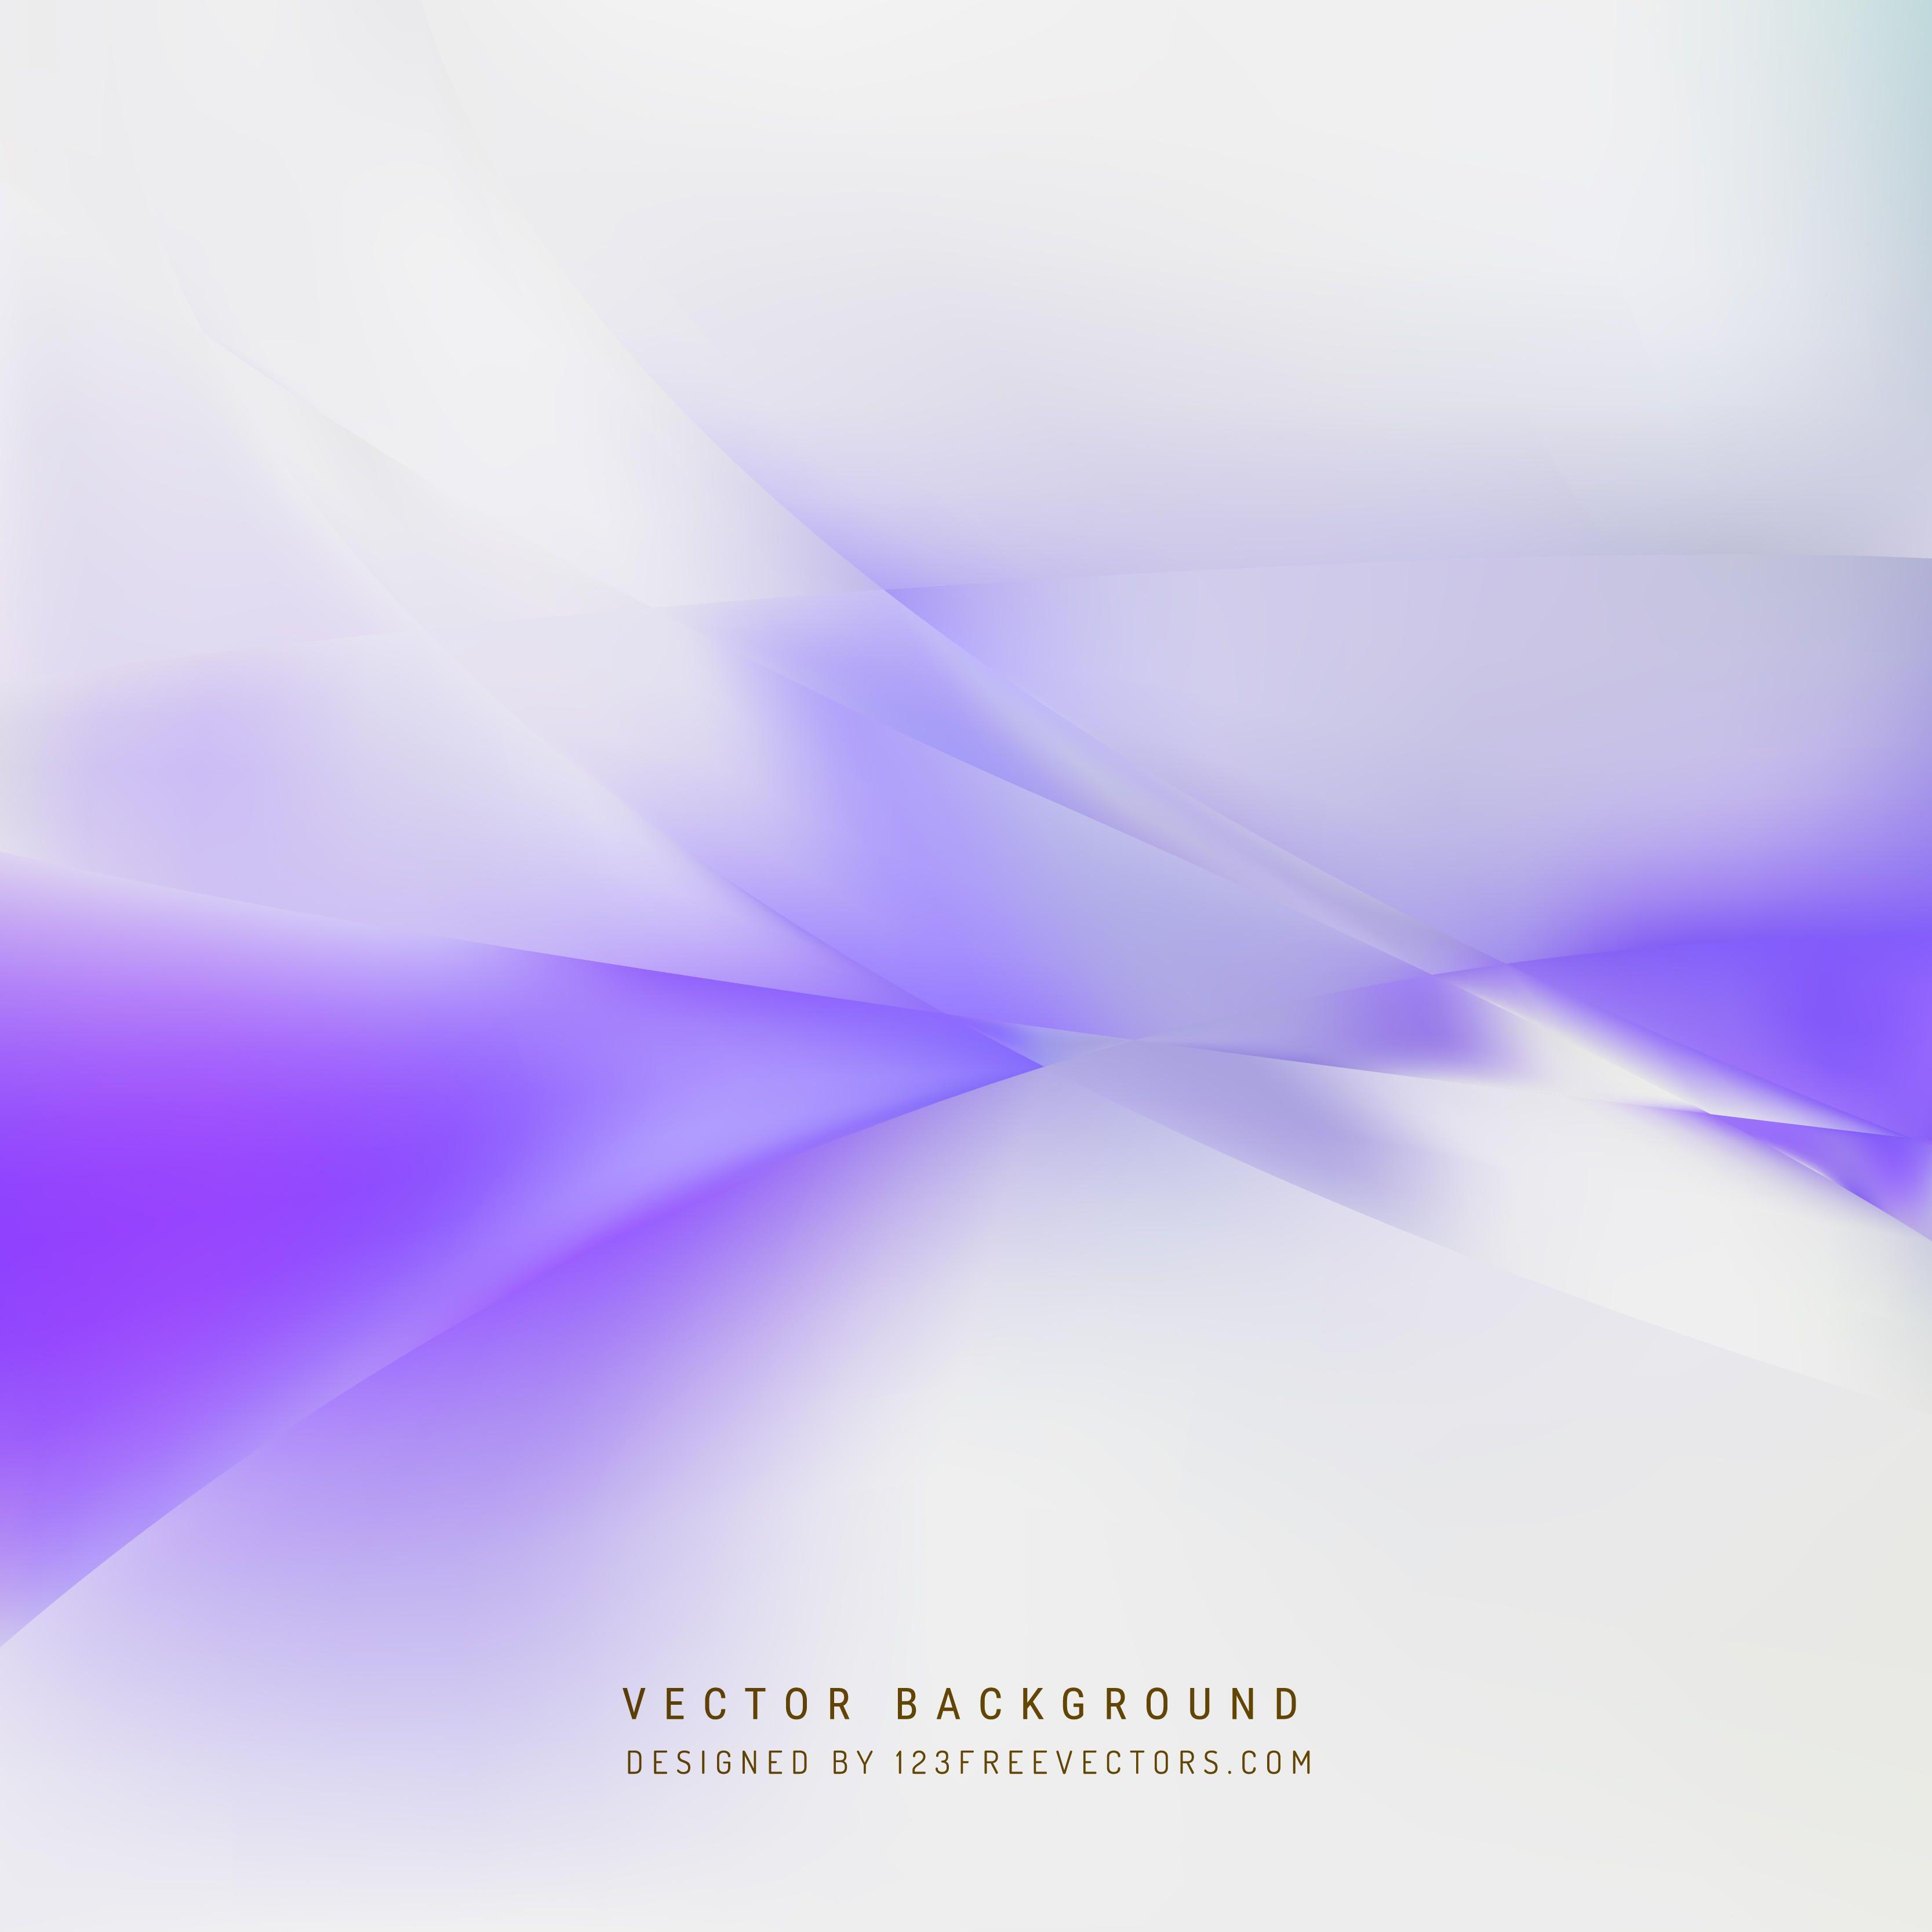 Light Purple Background Design Vectors. Download Free Vector